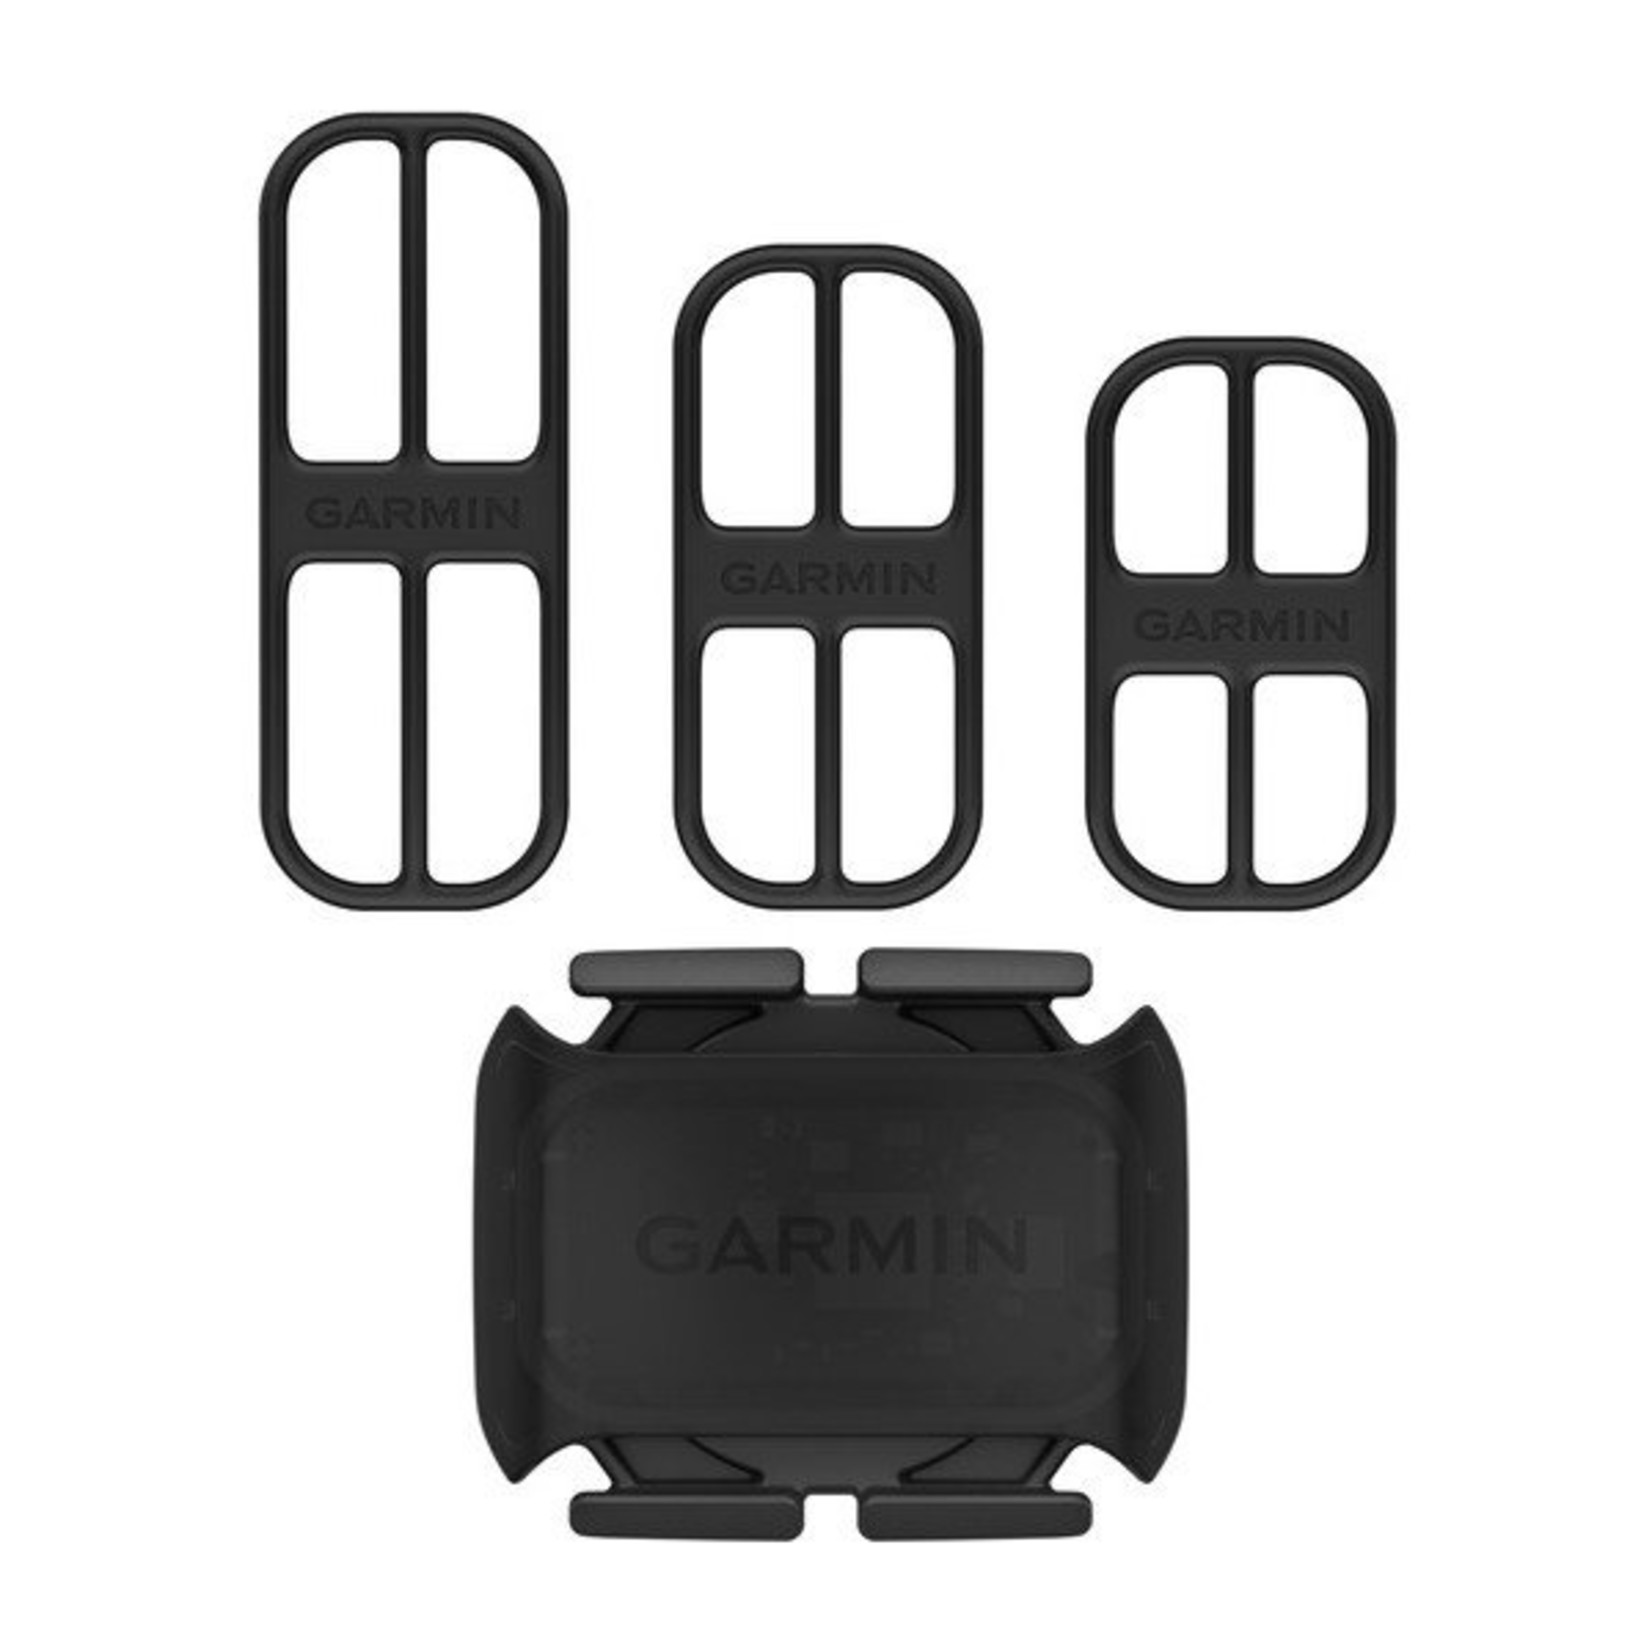 Garmin Garmin, Bike Cadence Sensor 2, 010-12844-00